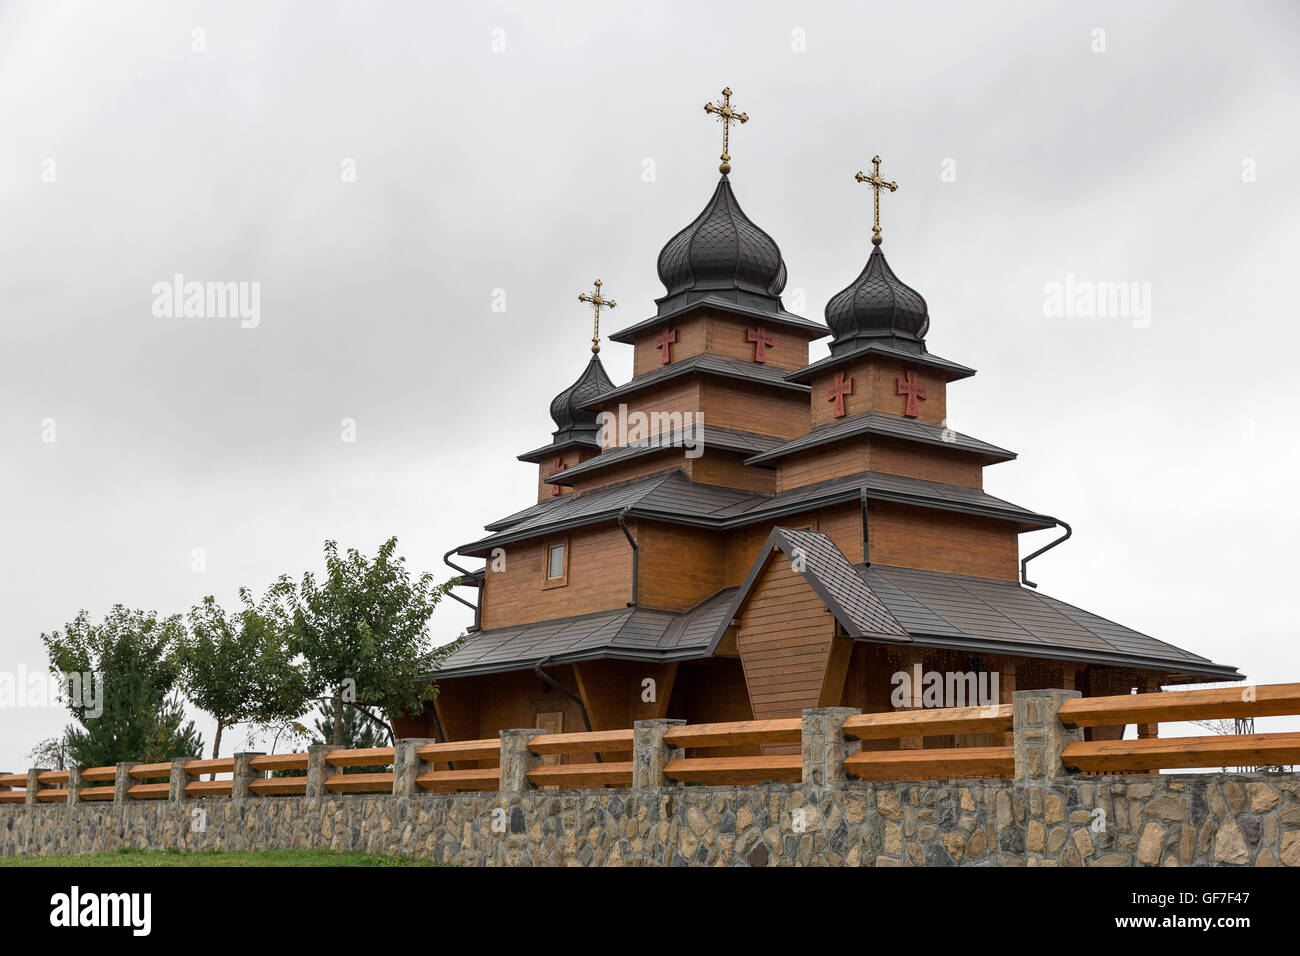 Vieille église en bois traditionnel dans les Carpates, région ouest de l'Ukraine, l'Europe Banque D'Images